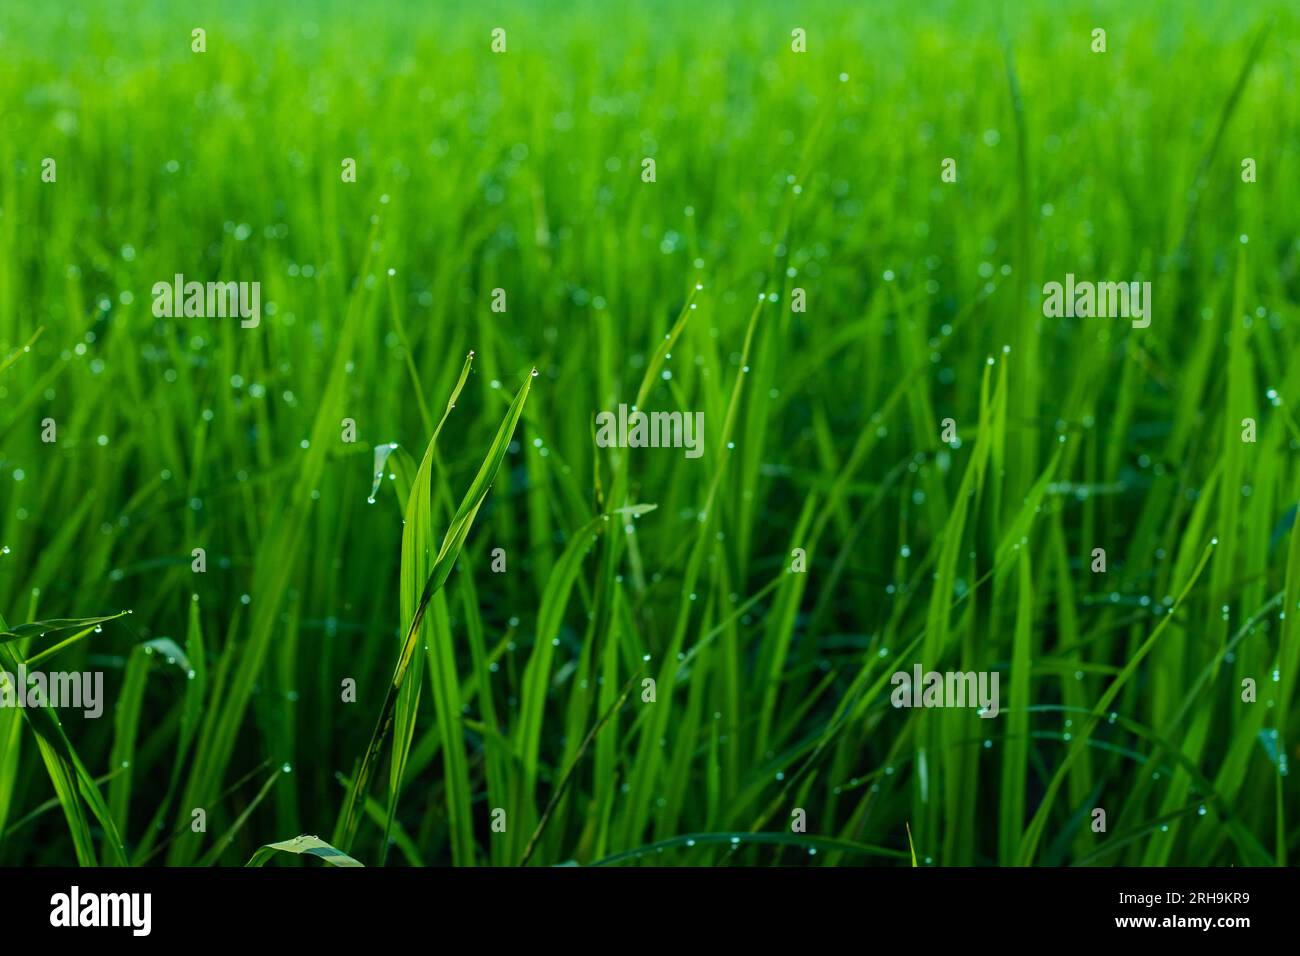 Tautropfen auf grünem Reisblatt am Morgen. Reisfelder sind eines der Hauptmerkmale der ländlichen Landschaft in vielen Teilen Südostasiens Stockfoto